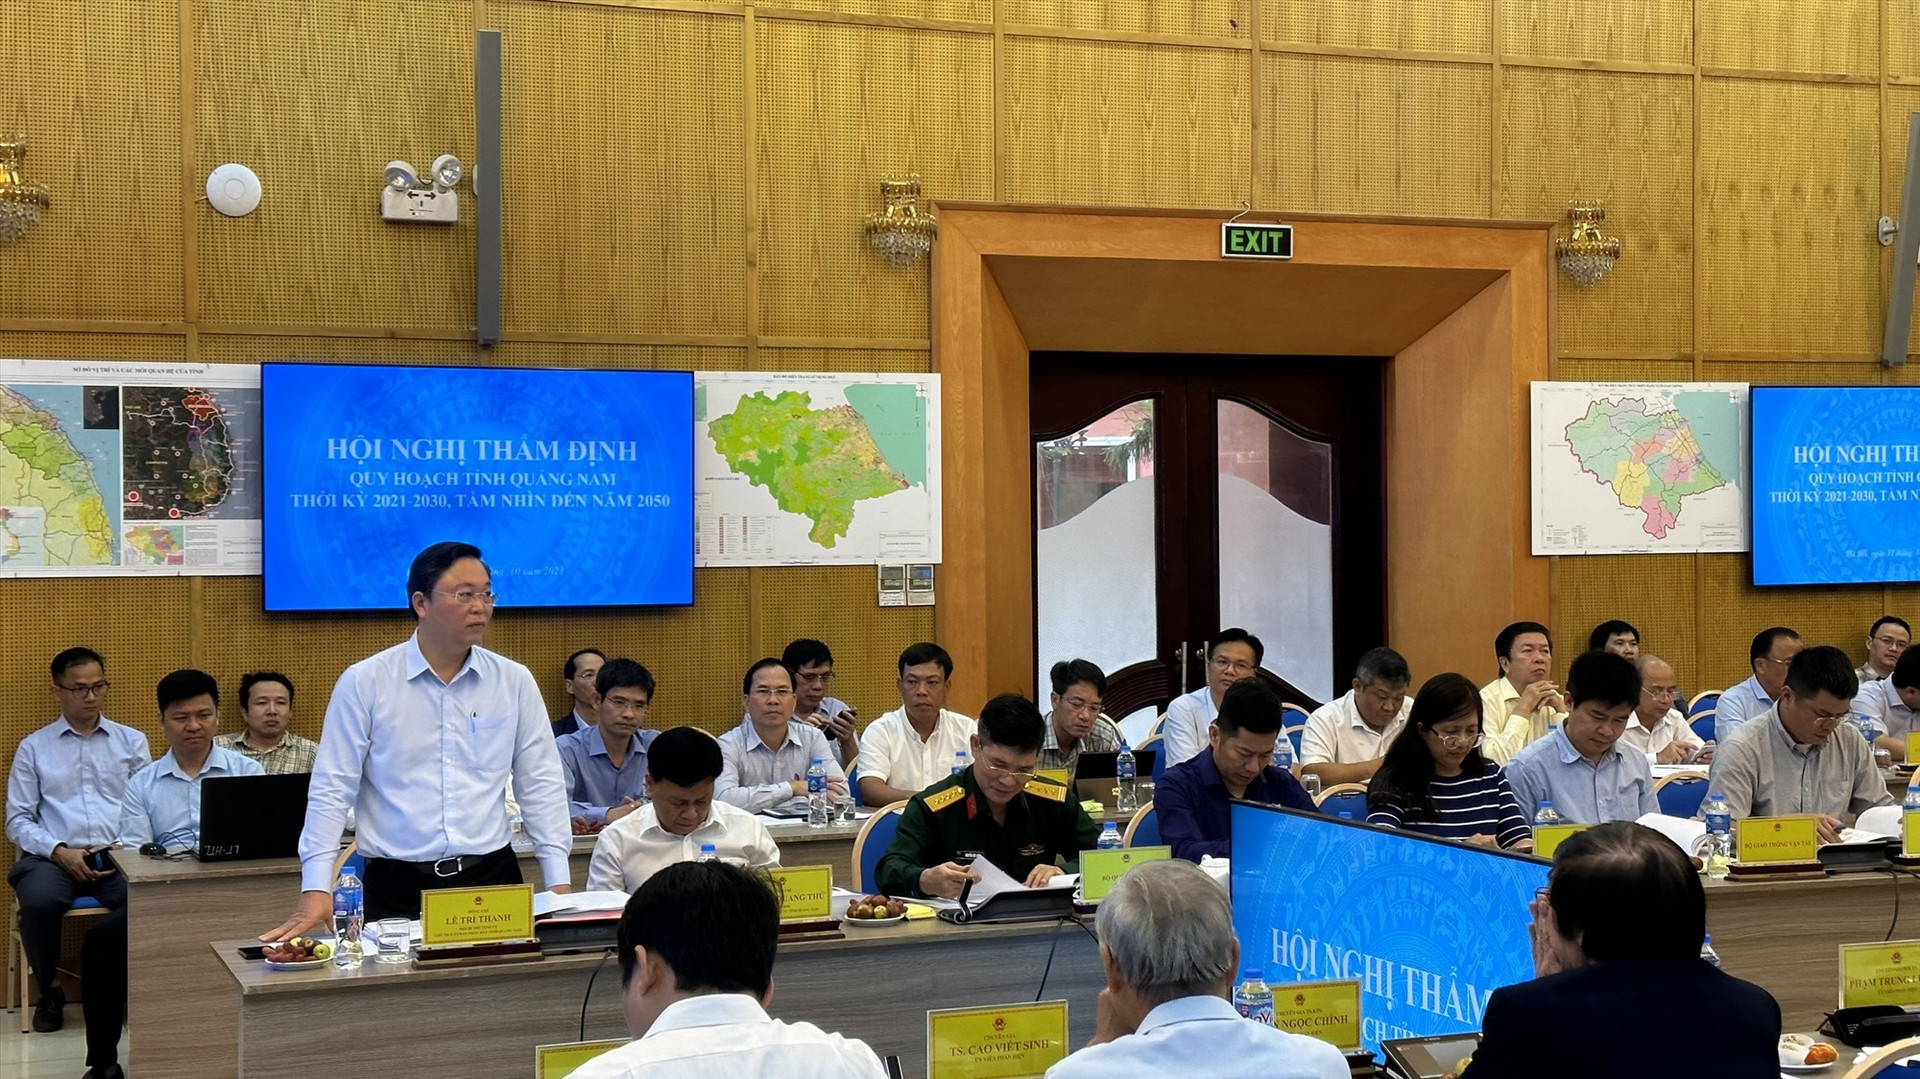 Chủ tịch UBND tỉnh Lê Trí Thanh trình bày tóm tắt Quy hoạch tỉnh Quảng Nam thời kỳ 2021 - 2030, tầm nhìn đến năm 2050 tại phiên họp thẩm định. Ảnh: D.H